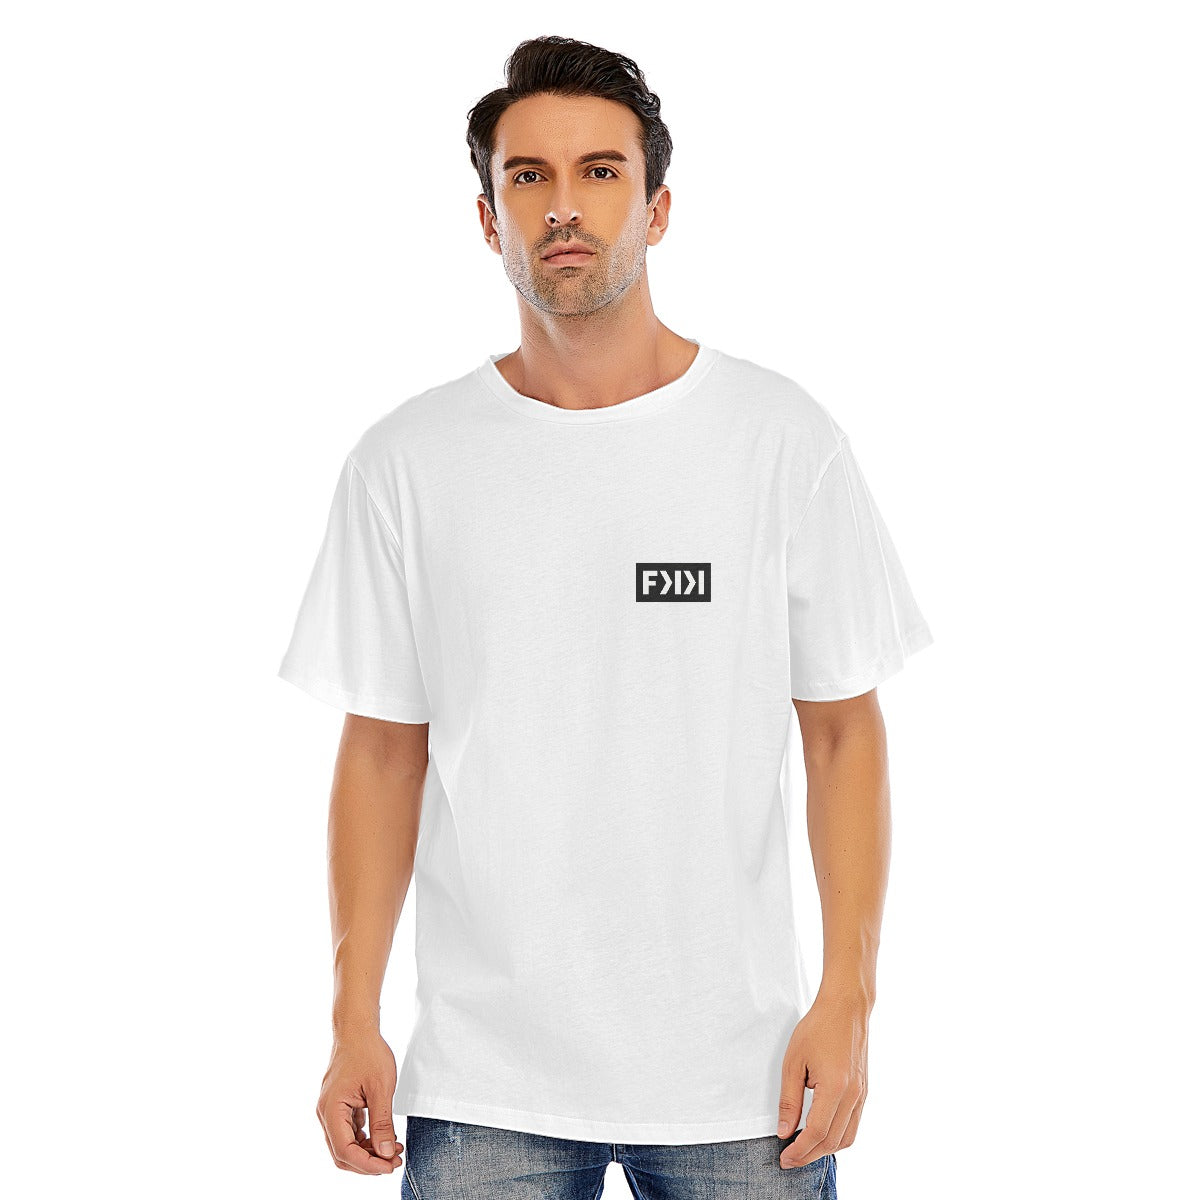 Unisex Oversized 100%Cotton Sleeve T-shirt